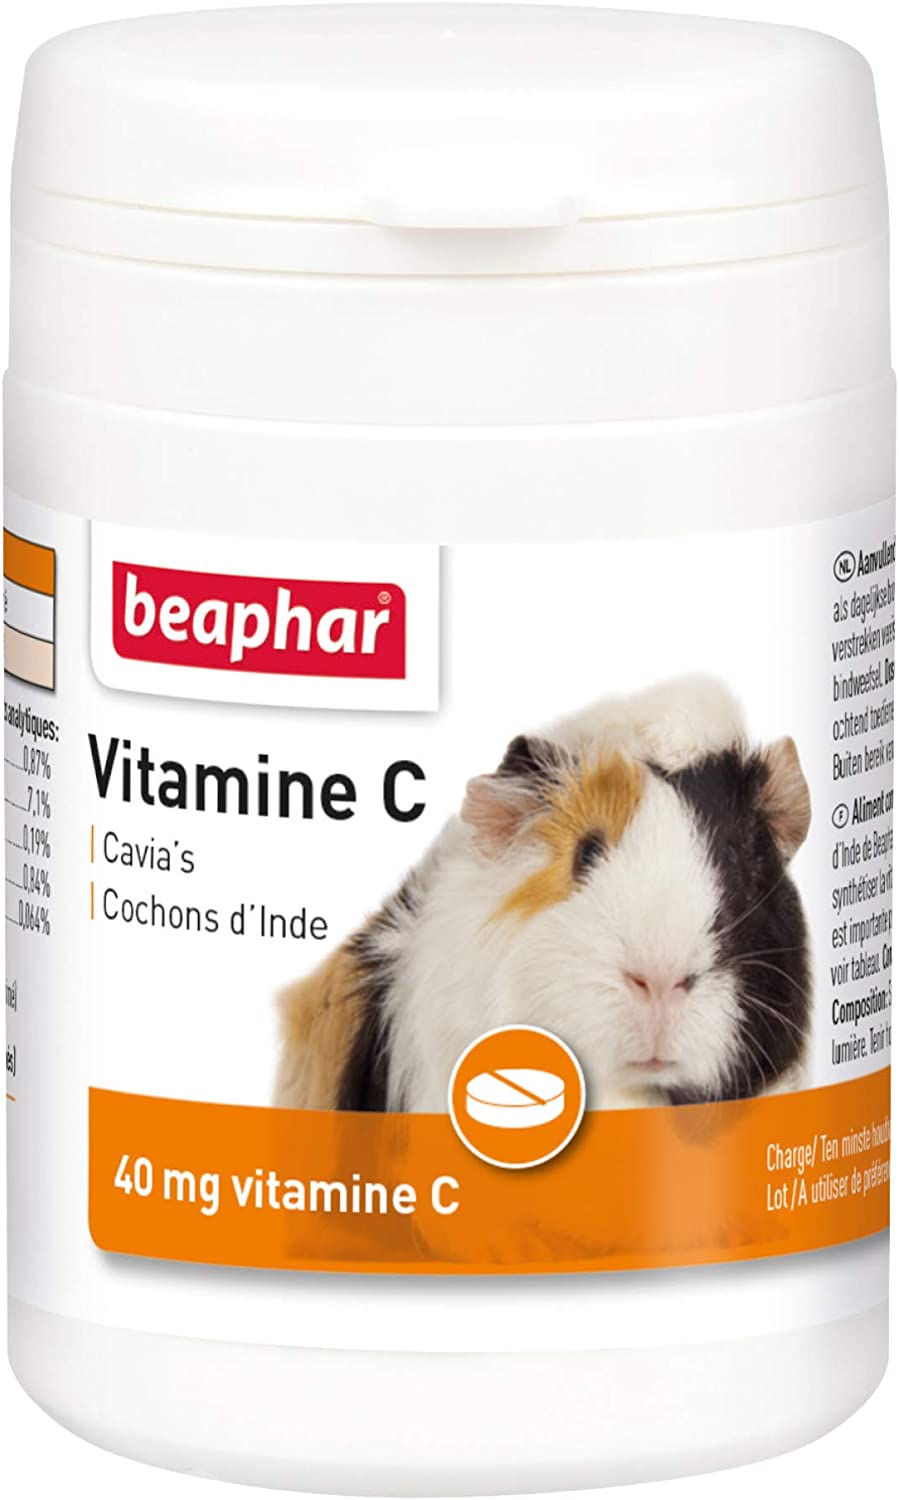 Vitamin C for guinea pigs